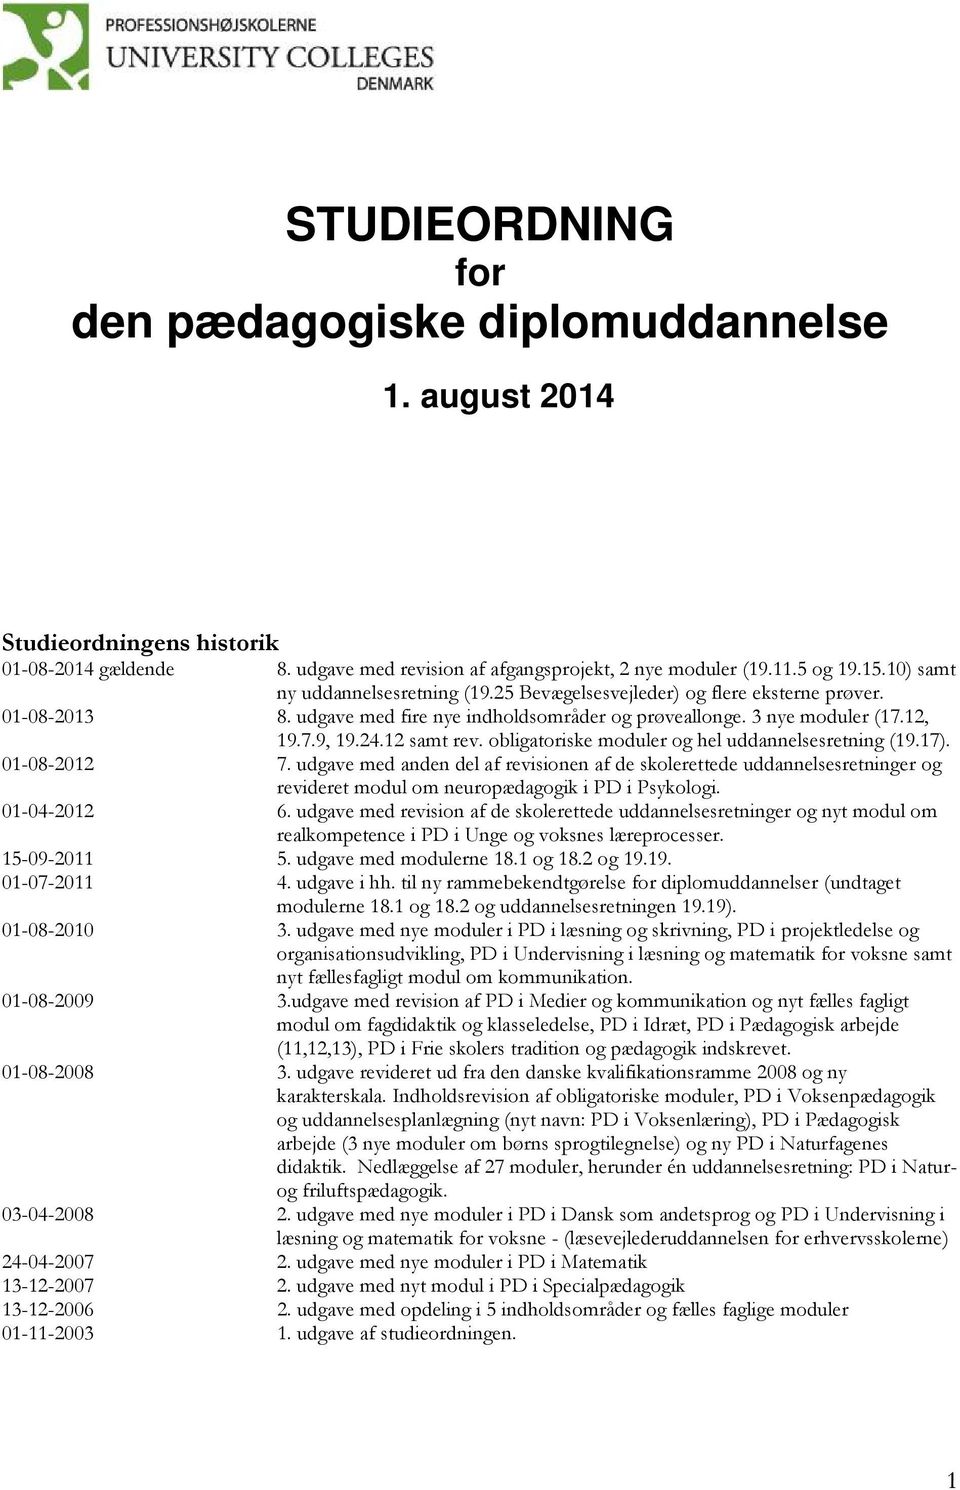 obligatoriske moduler og hel uddannelsesretning (19.17). 01-08-2012 7. udgave med anden del af revisionen af de skolerettede uddannelsesretninger og revideret modul om neuropædagogik i PD i Psykologi.